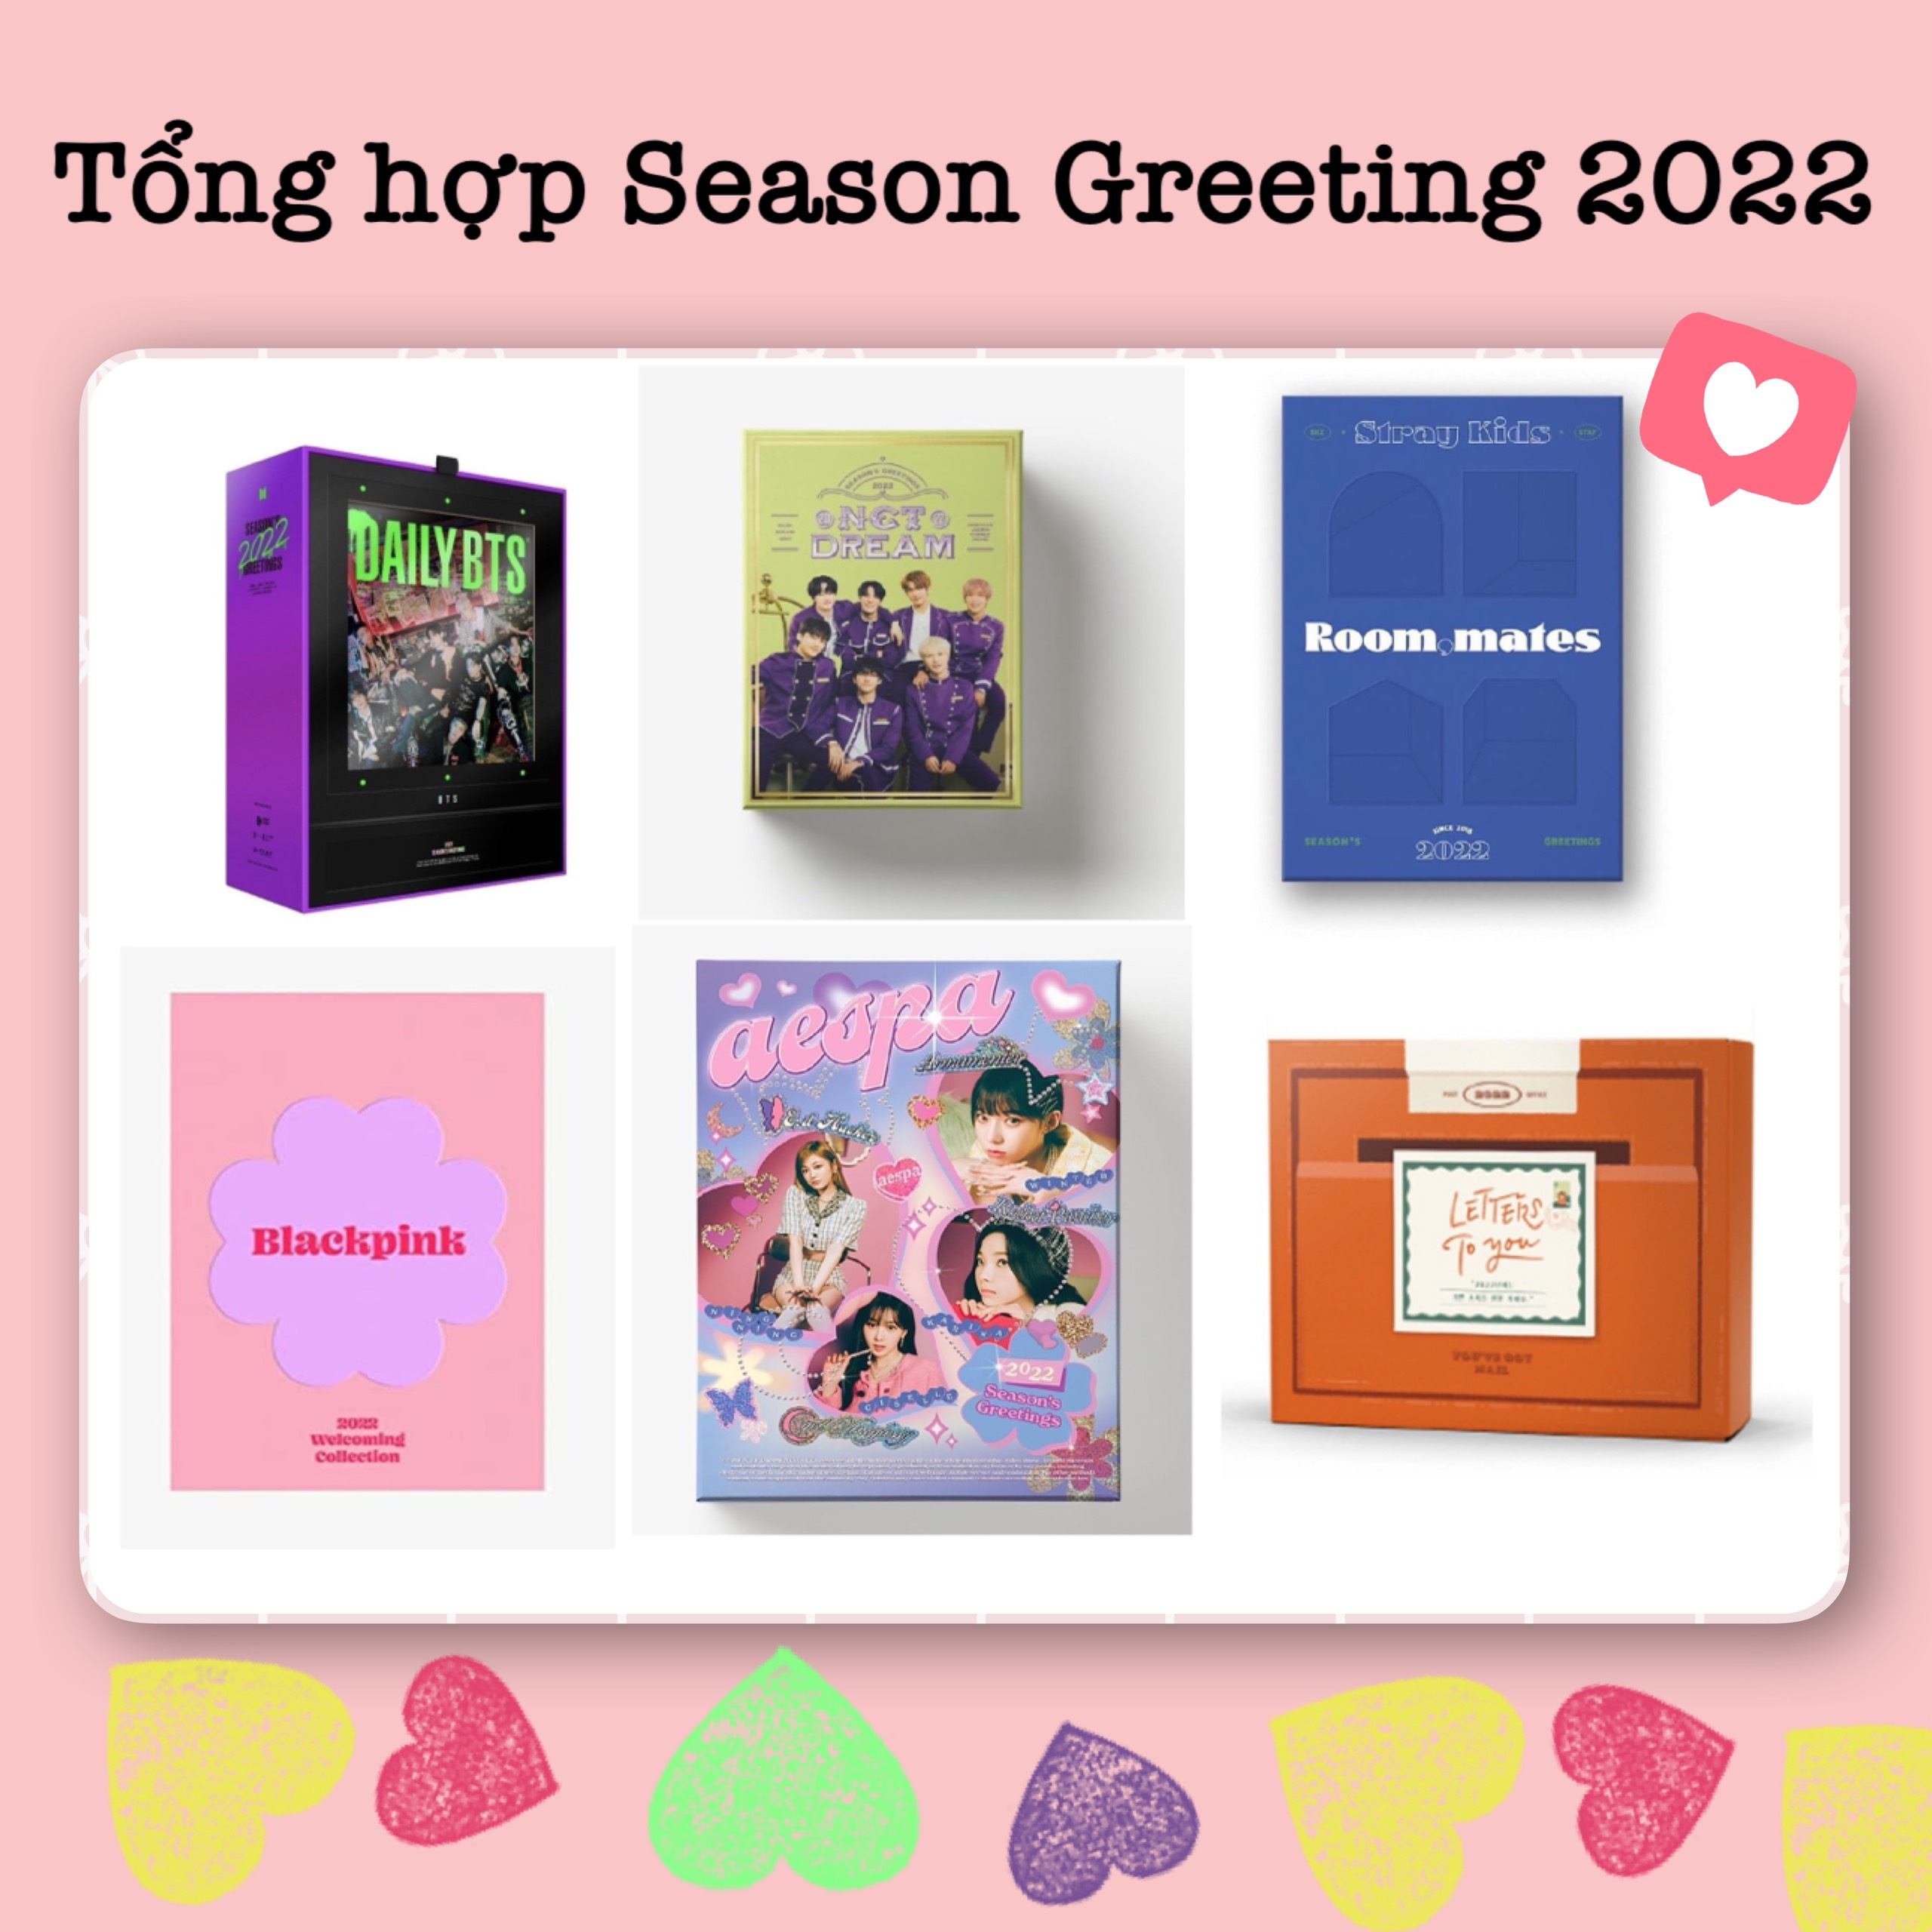 Season Greeting Kpop là gì? - Tìm hiểu ý nghĩa và vai trò trong ngành giải trí Hàn Quốc